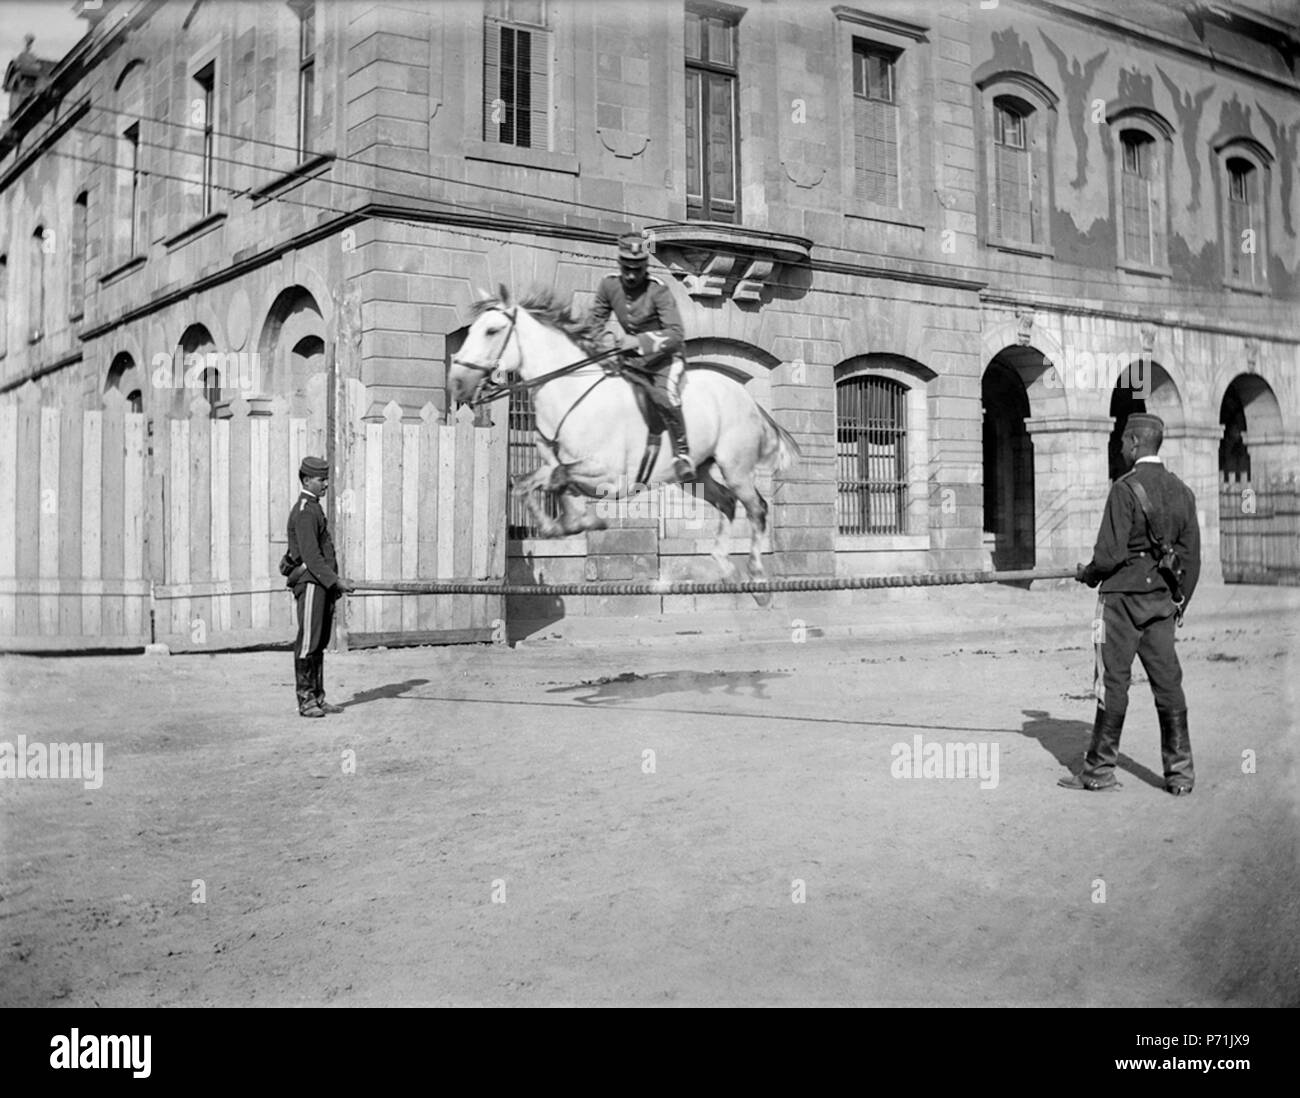 8 Baldomer Gili Roig. Concurs Hípic Internacional de Barcelona (Pati d’Armes de la Ciutadella), 1905 - 1910 Stock Photo